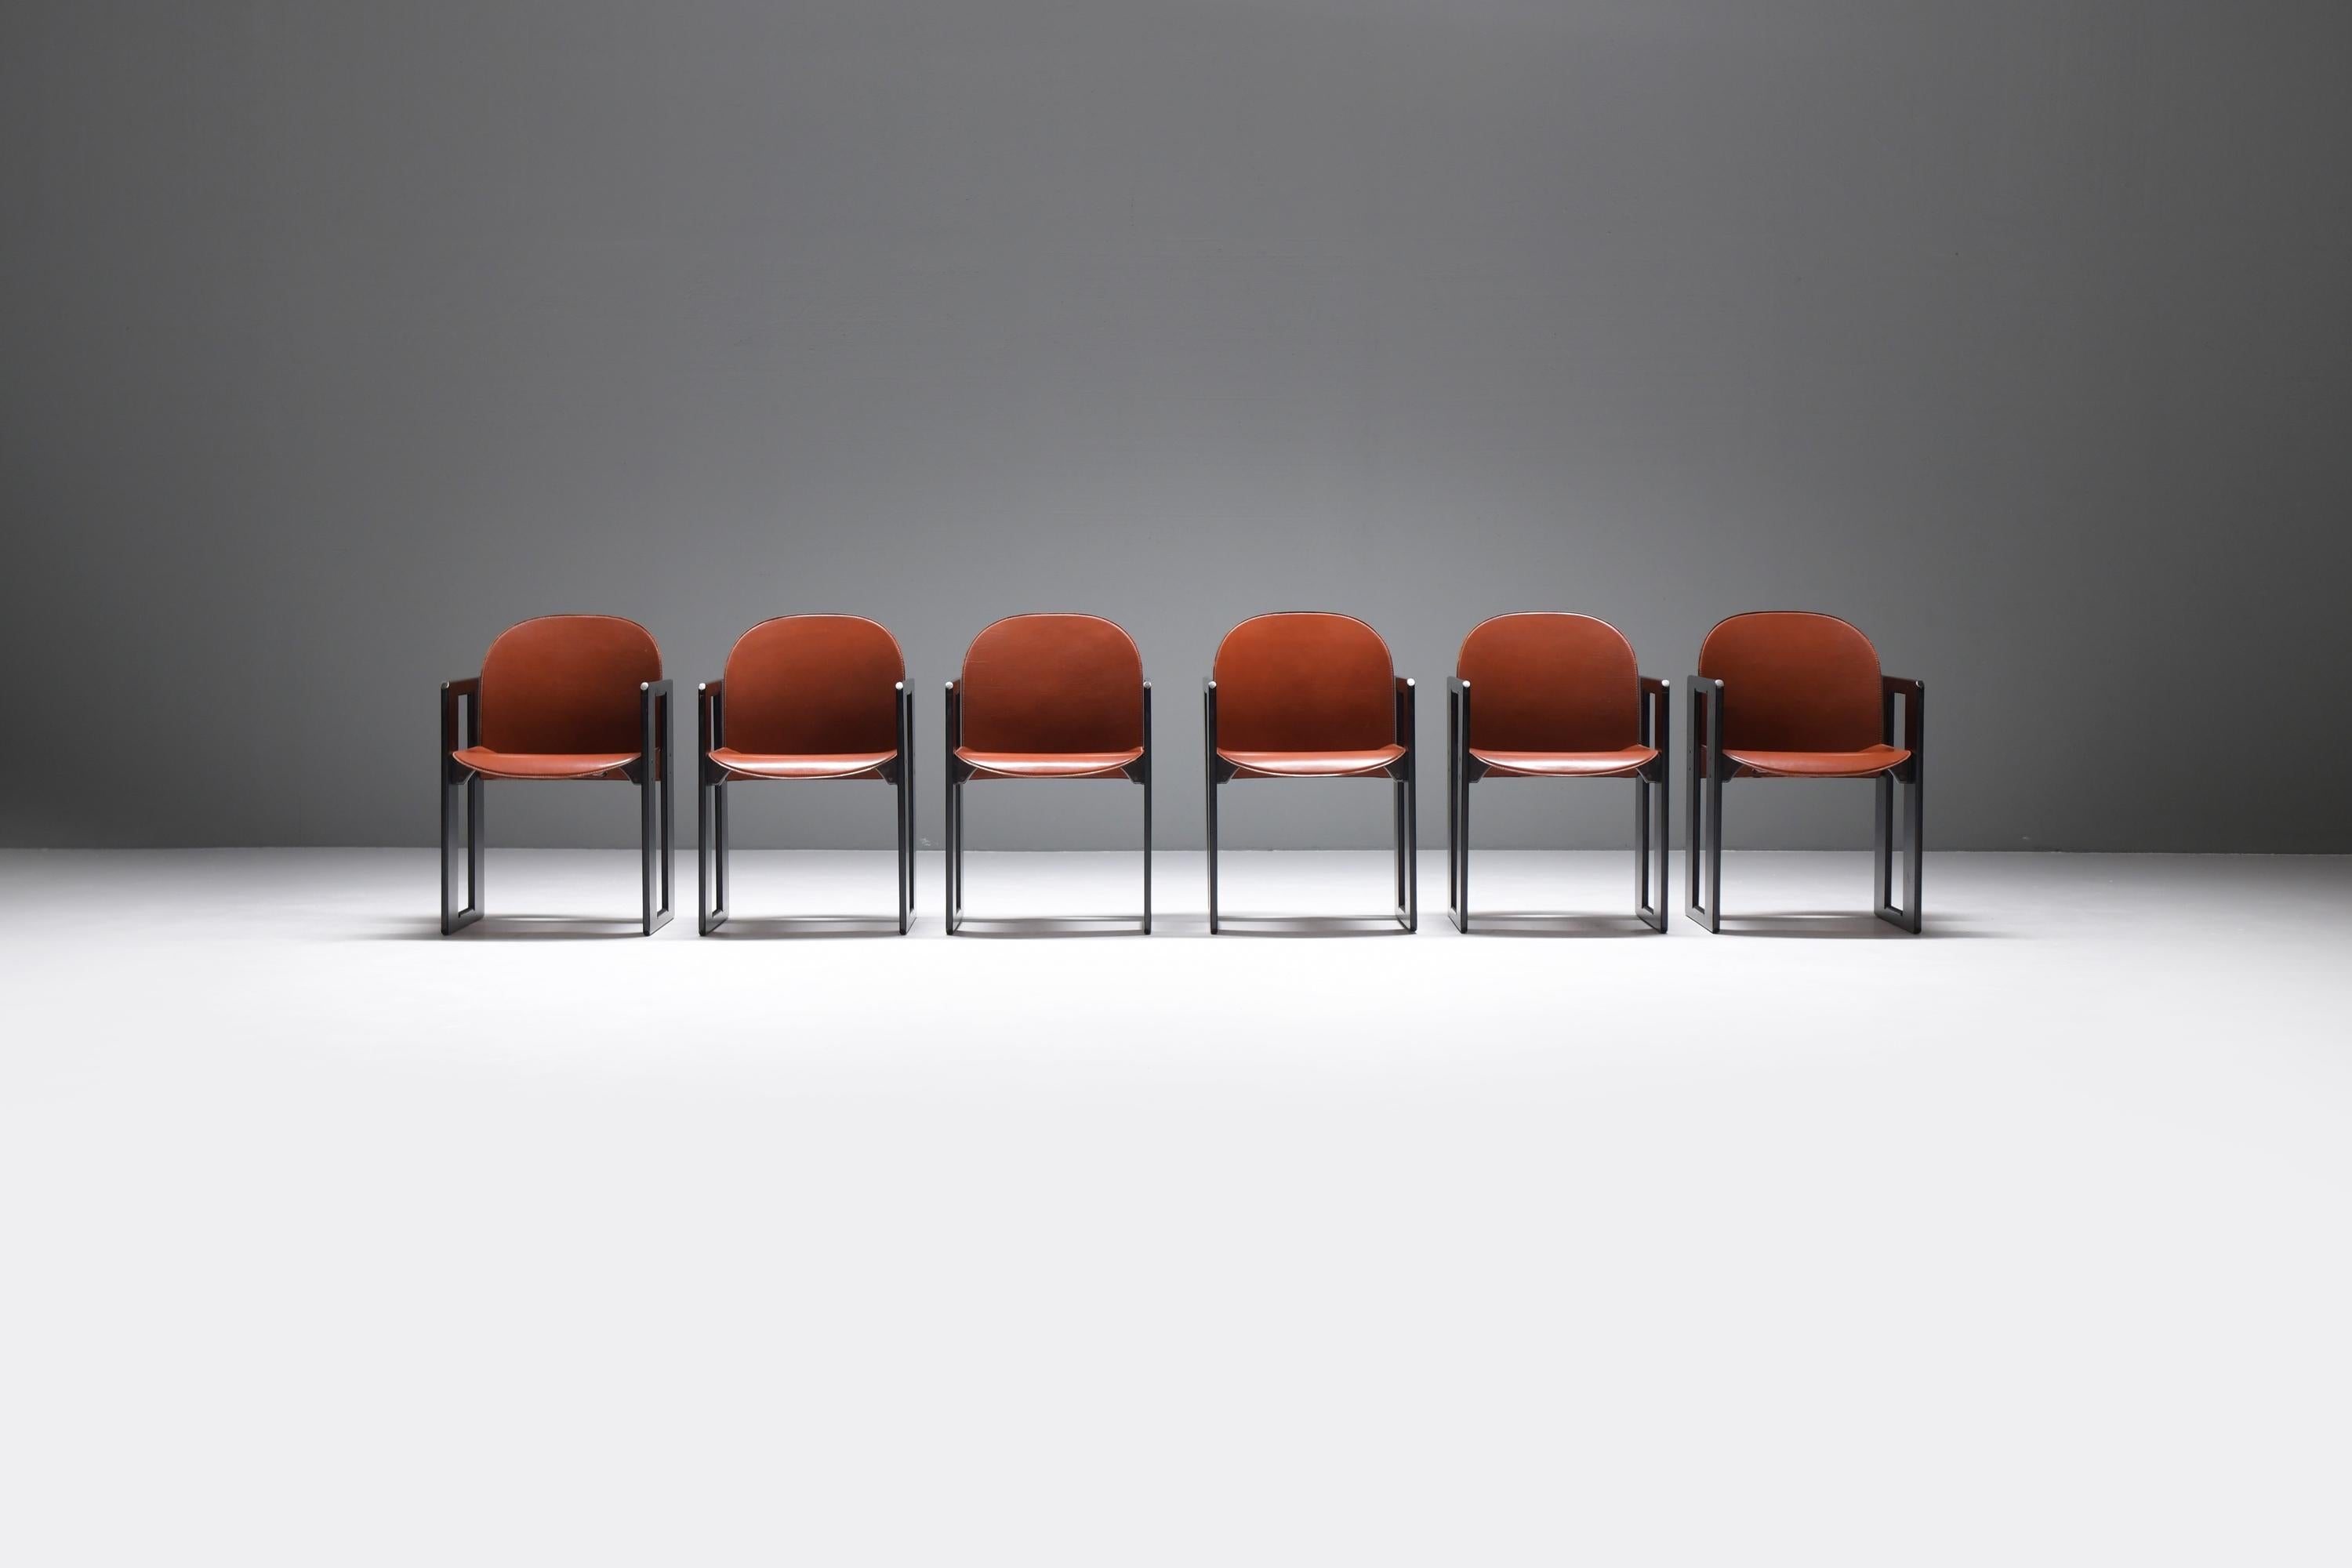 Passender Satz von 6 Vintage Dialogo Sesseln mit Struktur aus schwarz lackiertem Holz.  Sitz und Rückenlehne aus burgunderfarbenem/braunem Originalleder.
Entworfen von Tobia & Afra Scarpa und hergestellt von B&B Italia in den 1970er Jahren

Der